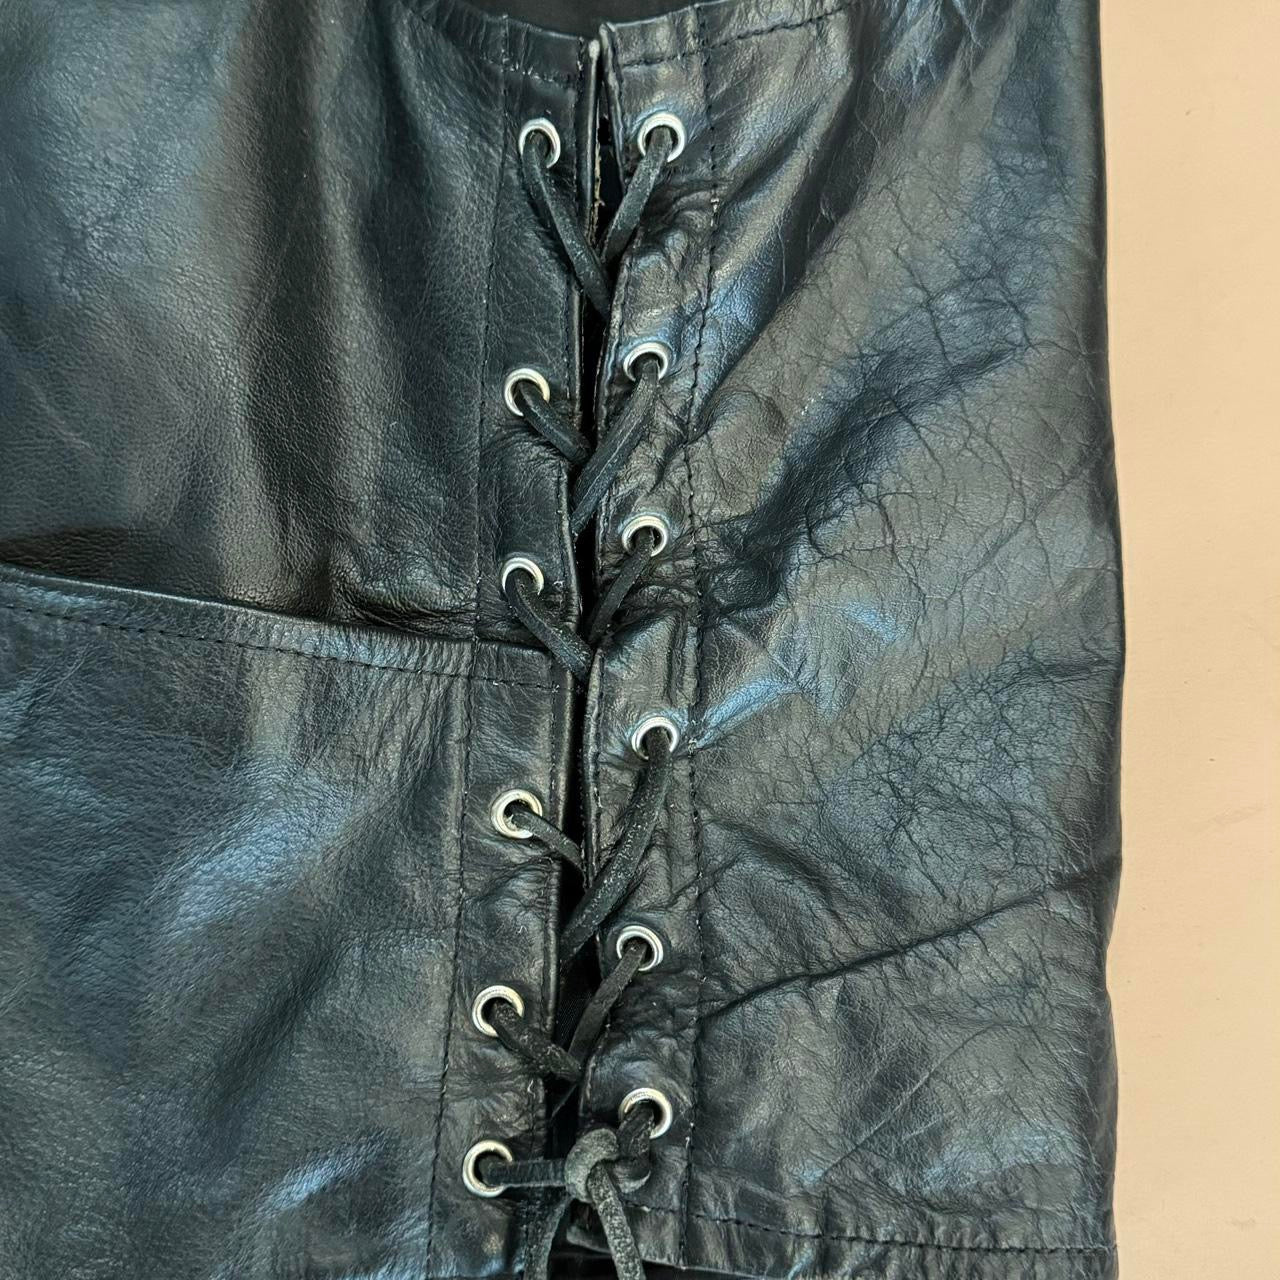 Vintage 90s Mens XL Leather Vest